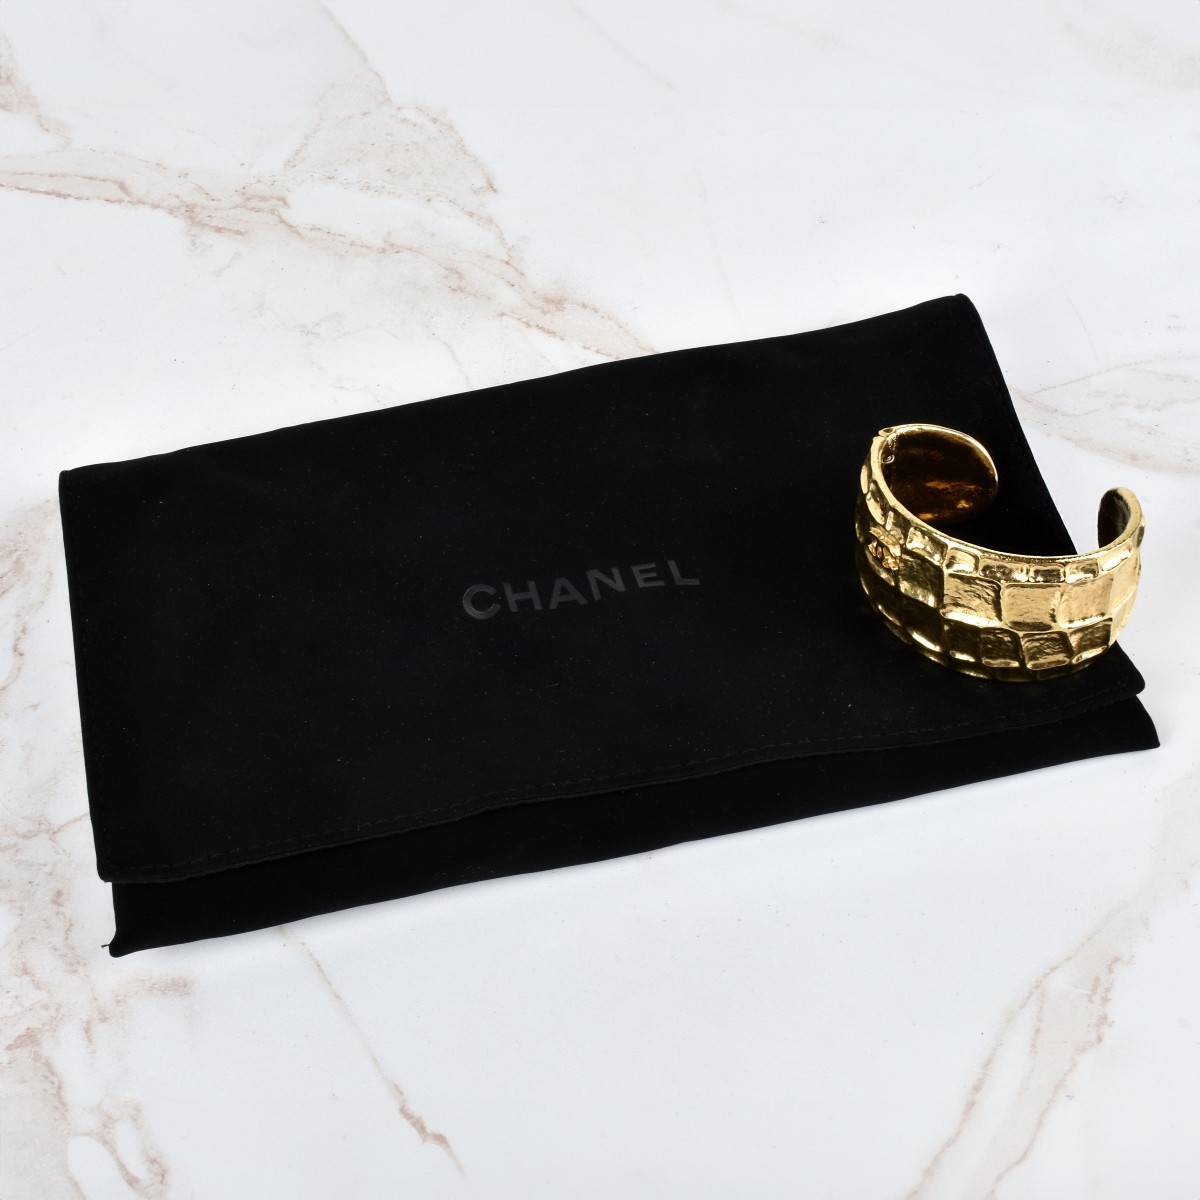 Chanel Metiers D'Arte Cuff Bracelet